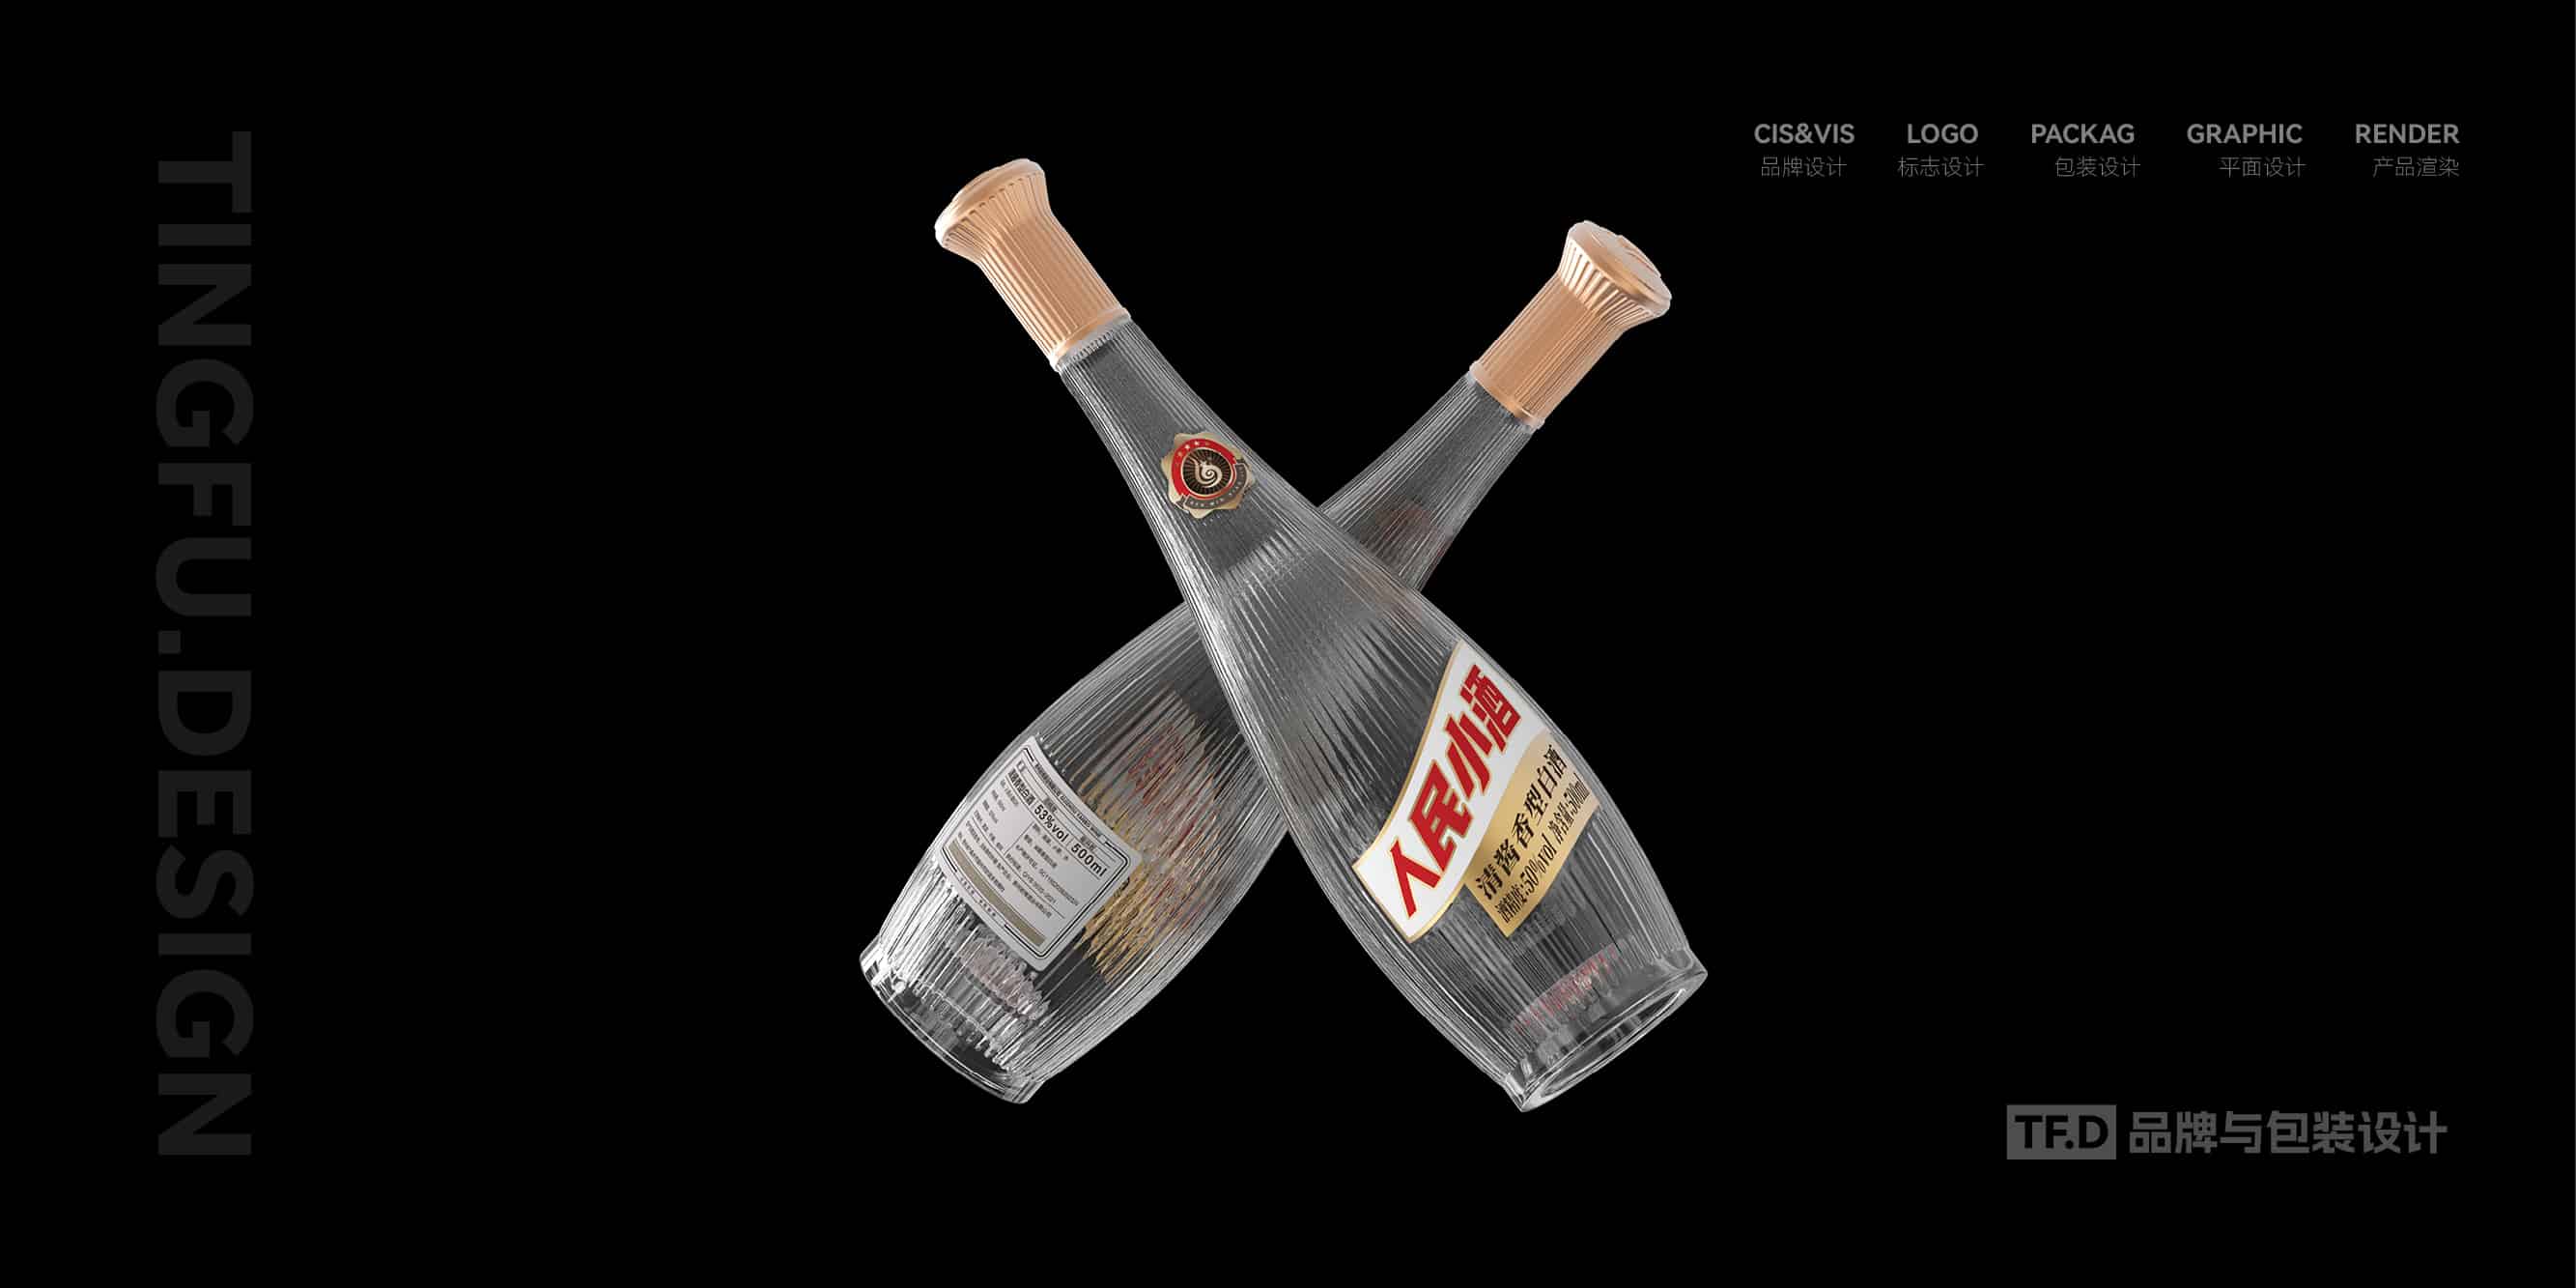 TFD品牌与包装设计-部分酒包装设计案例52-tuya.jpg